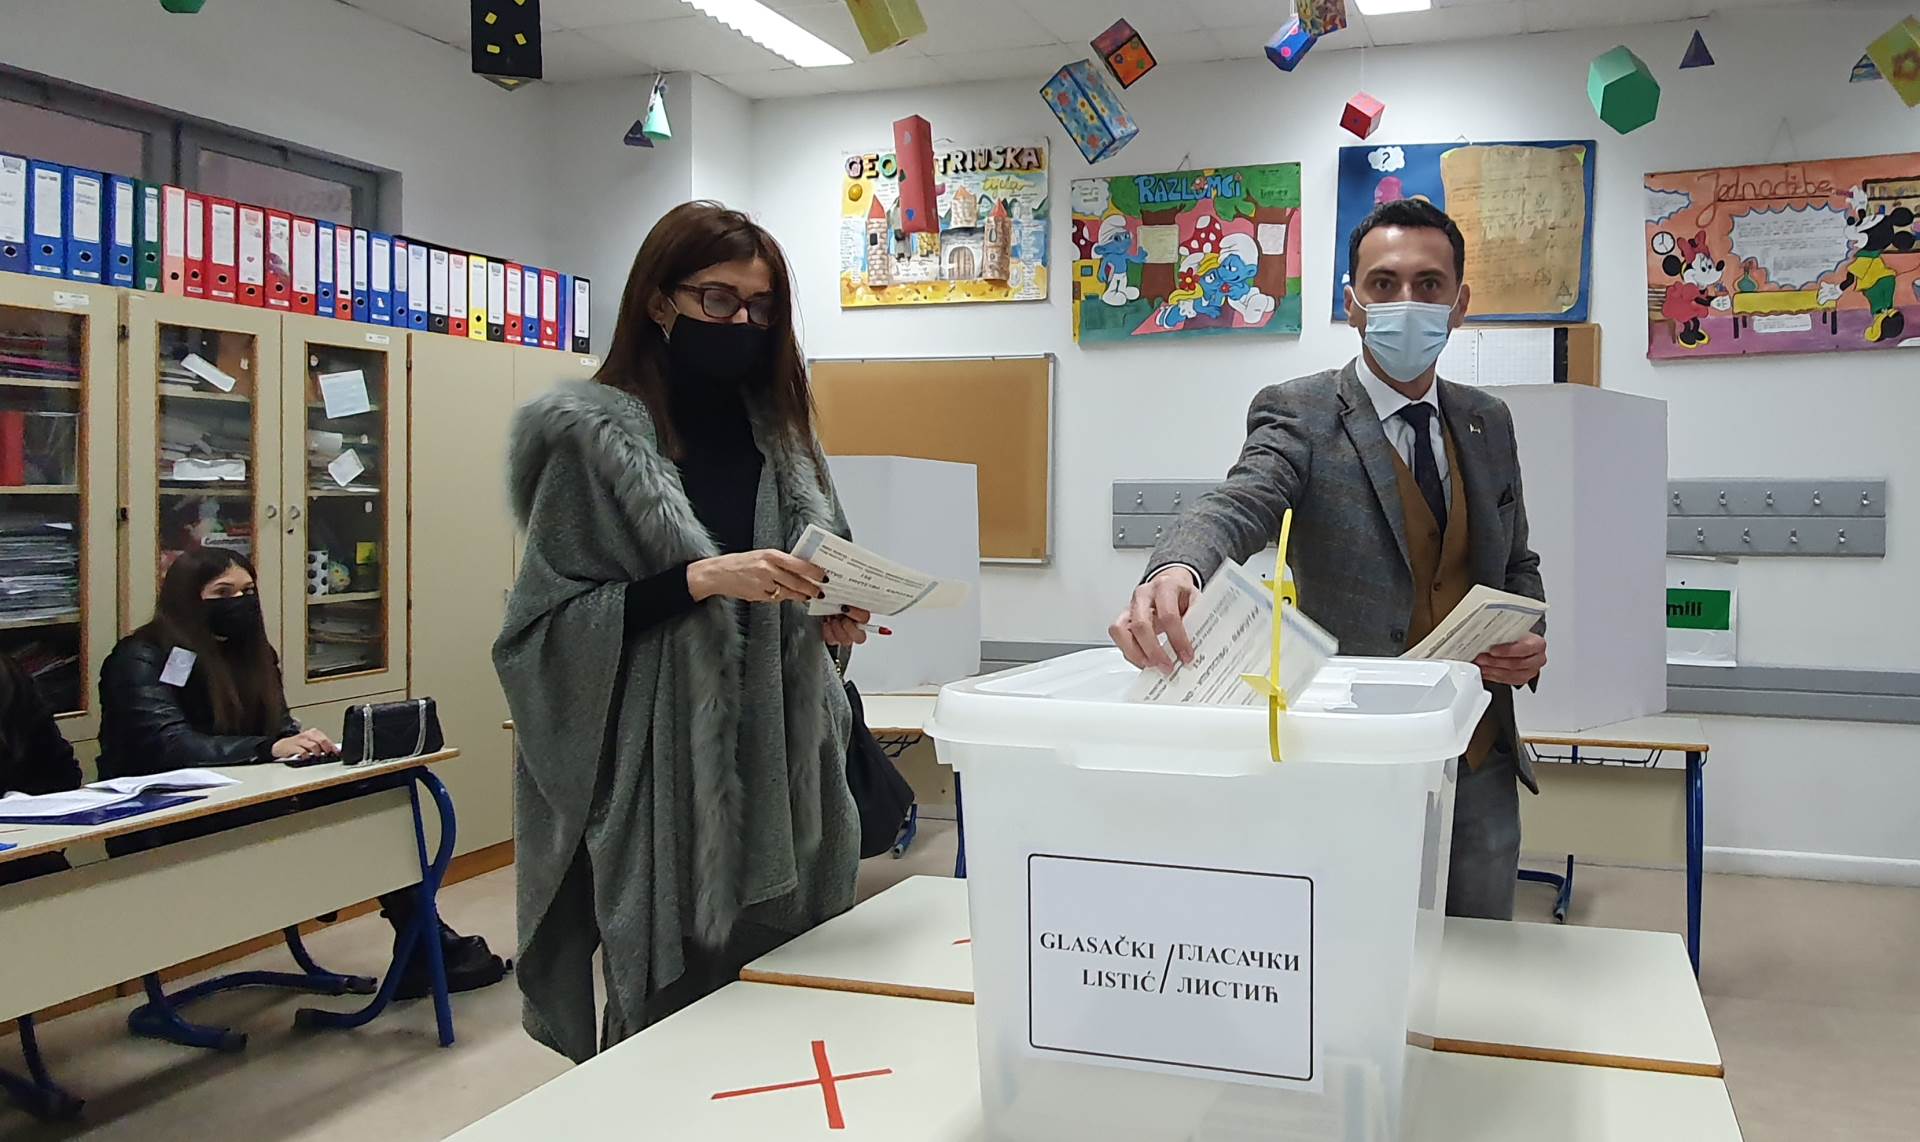  Izbori u Mostaru: Štamparske greške, manjak glasača i nelegalno legitimisanje 